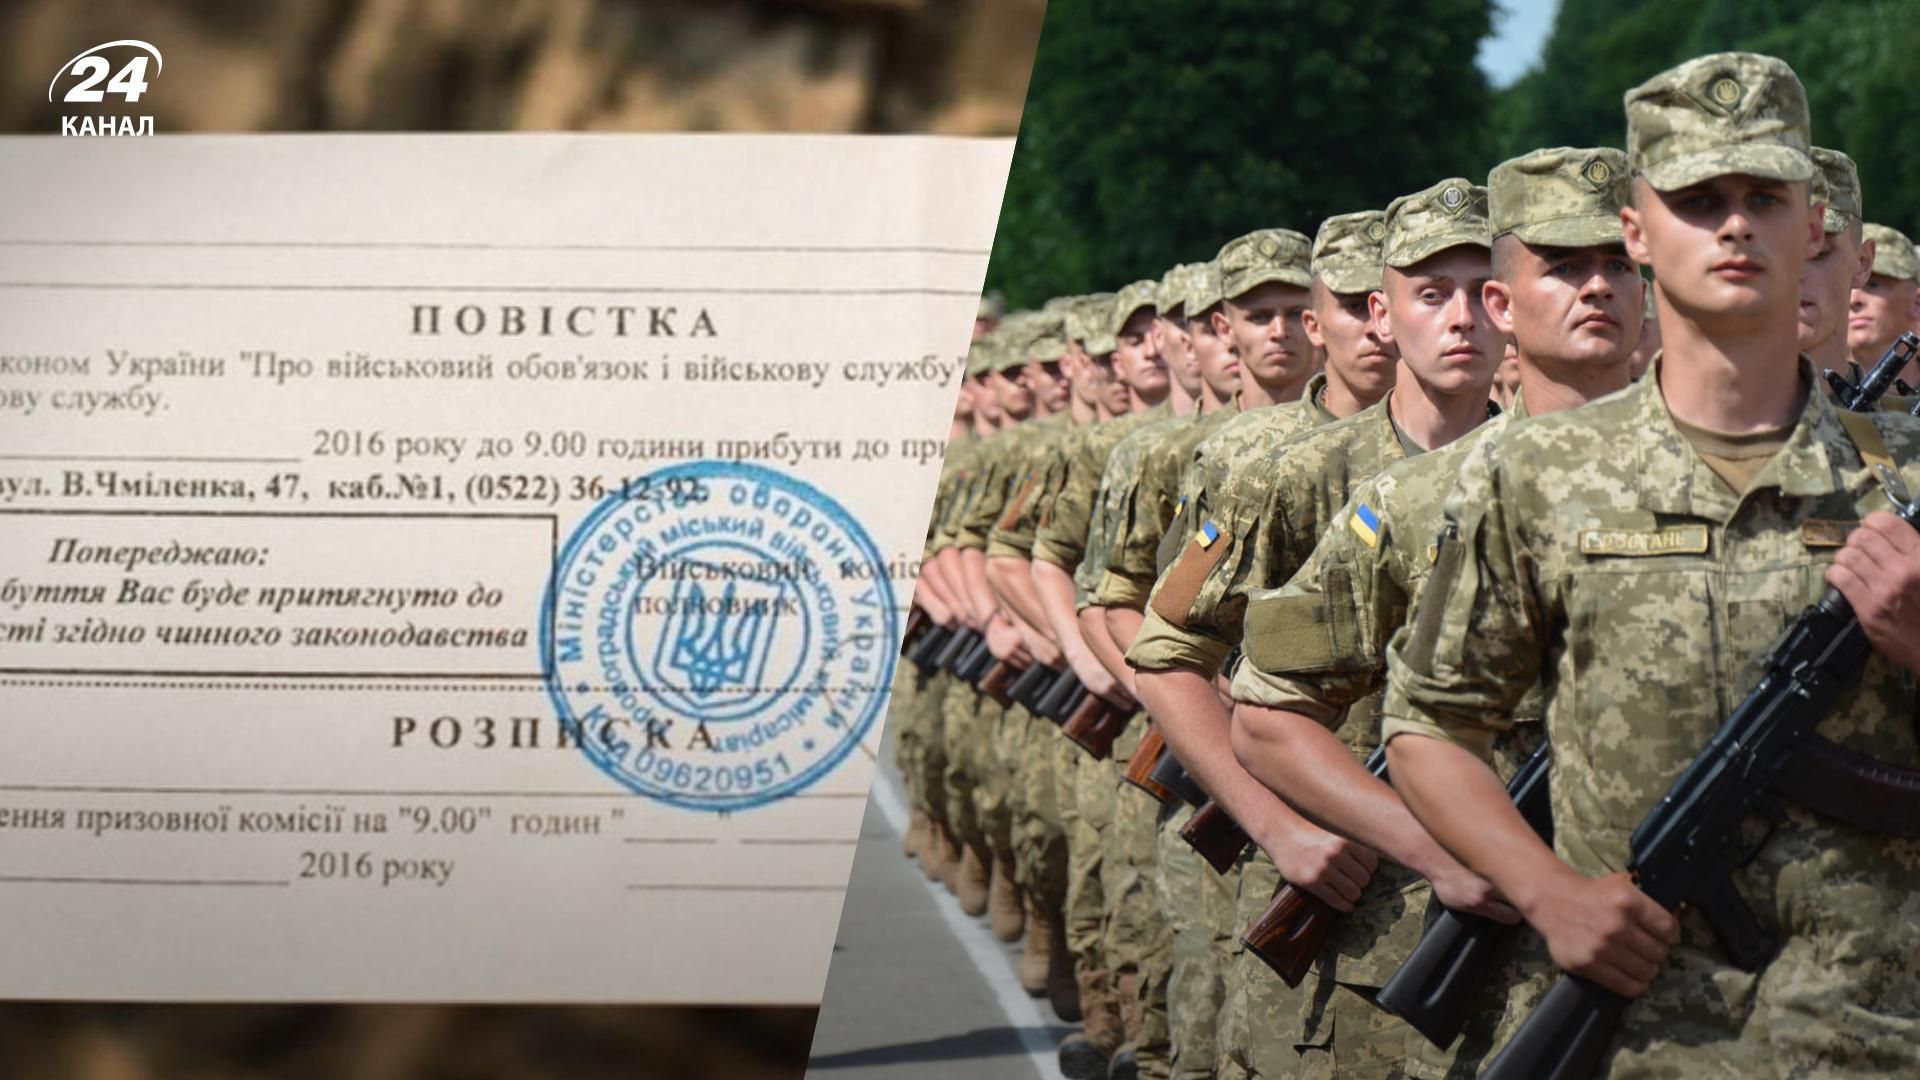 Мобилизация в Украине 2022 - какие данные должна содержать повестка, заполненная военкоматом